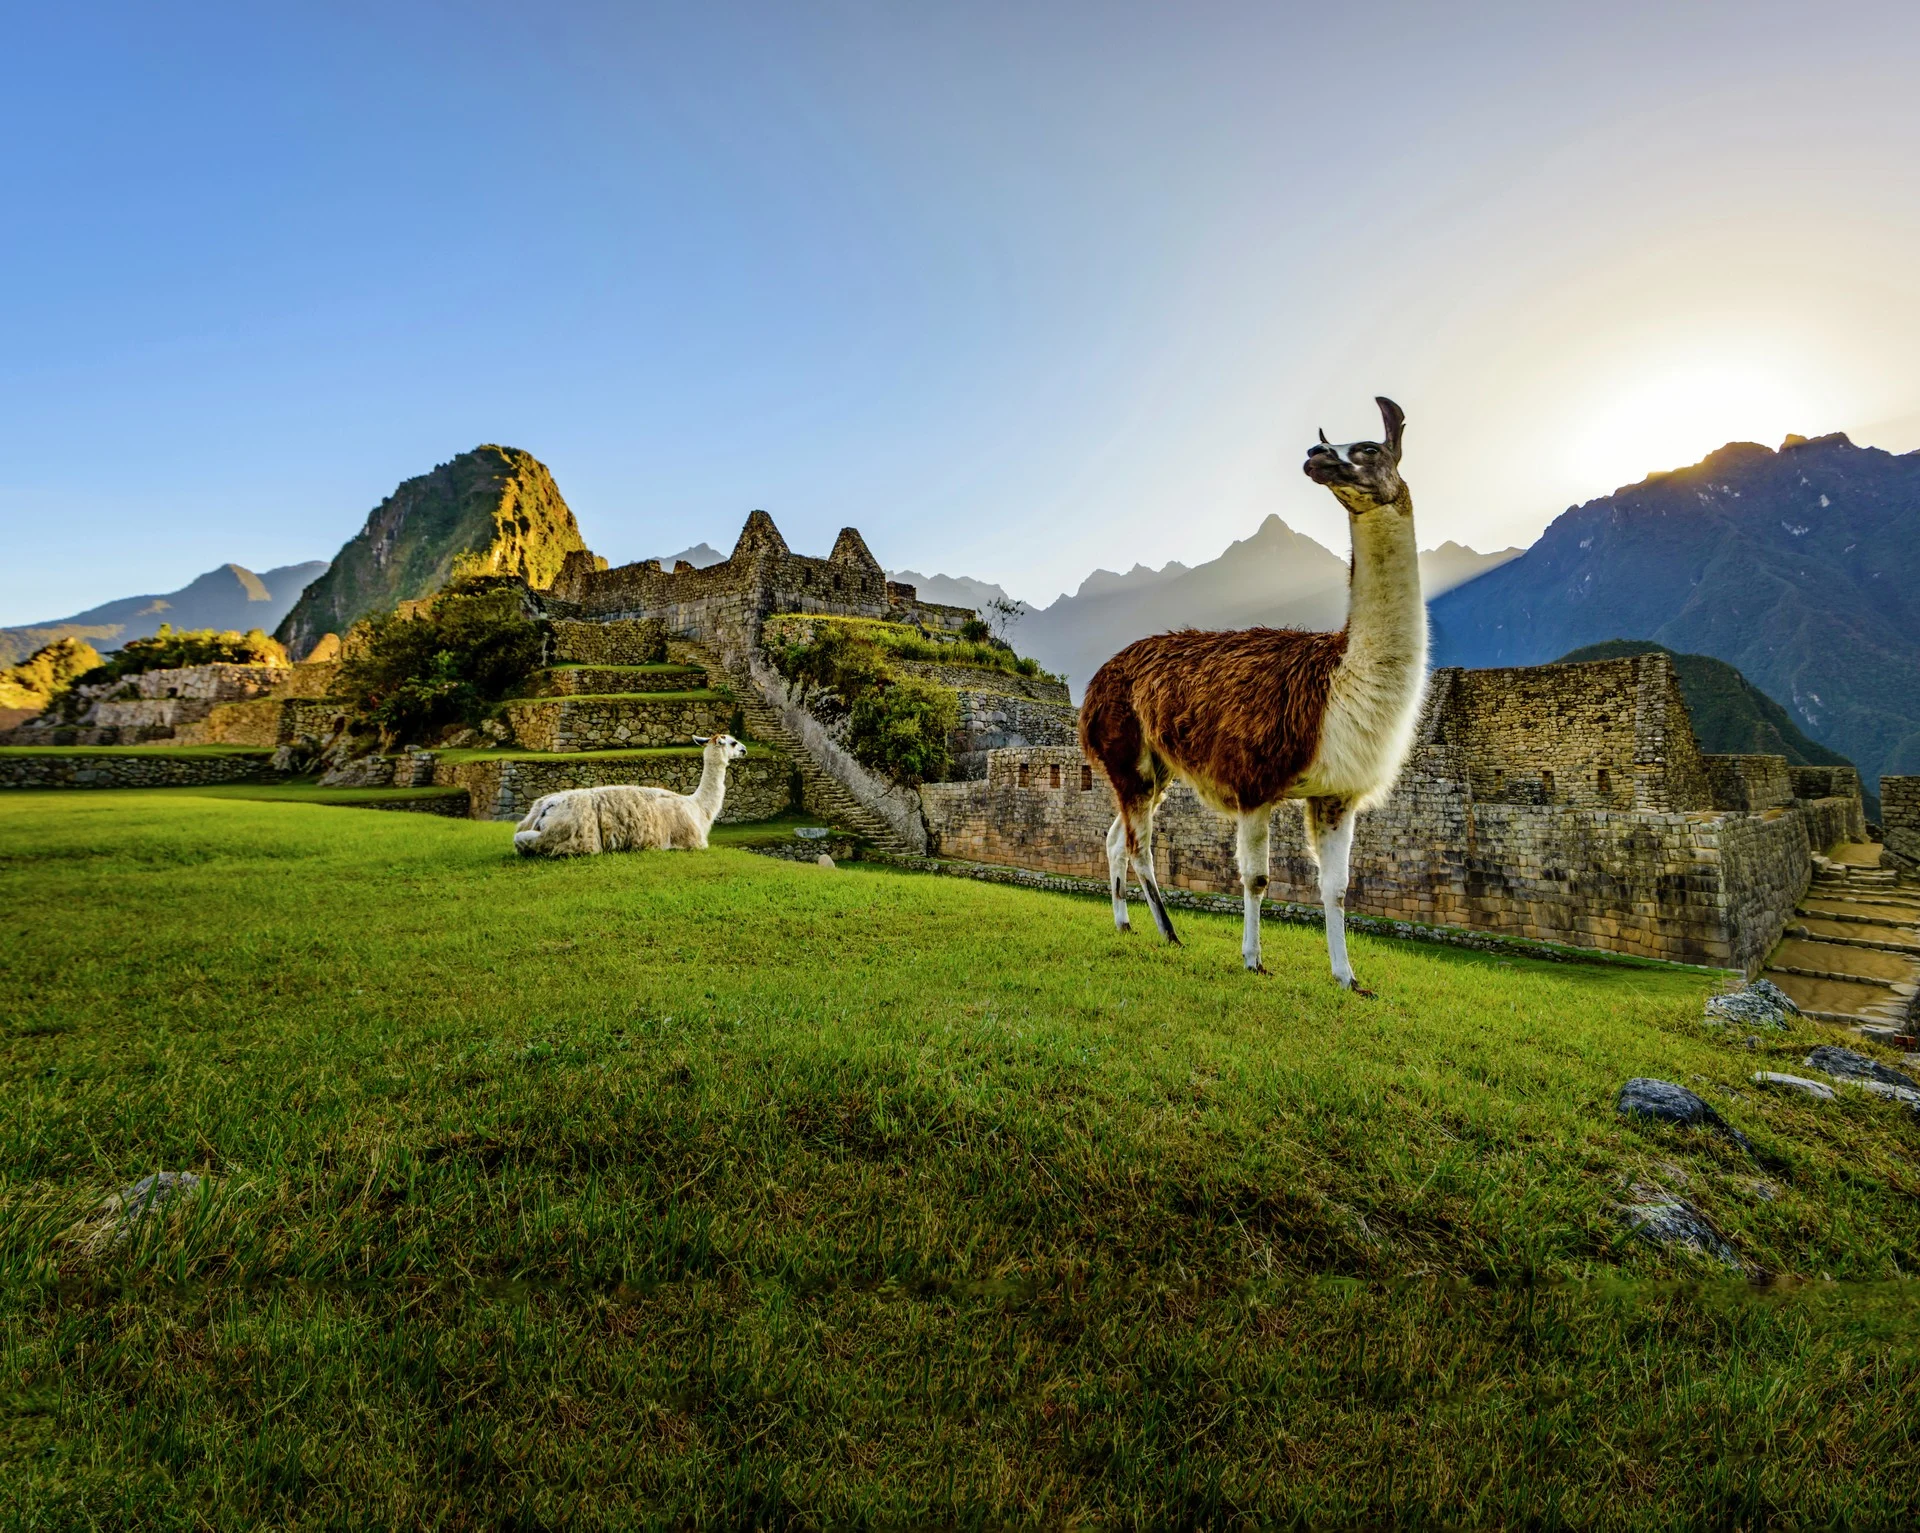 Llama in Machu Picchu, Peru